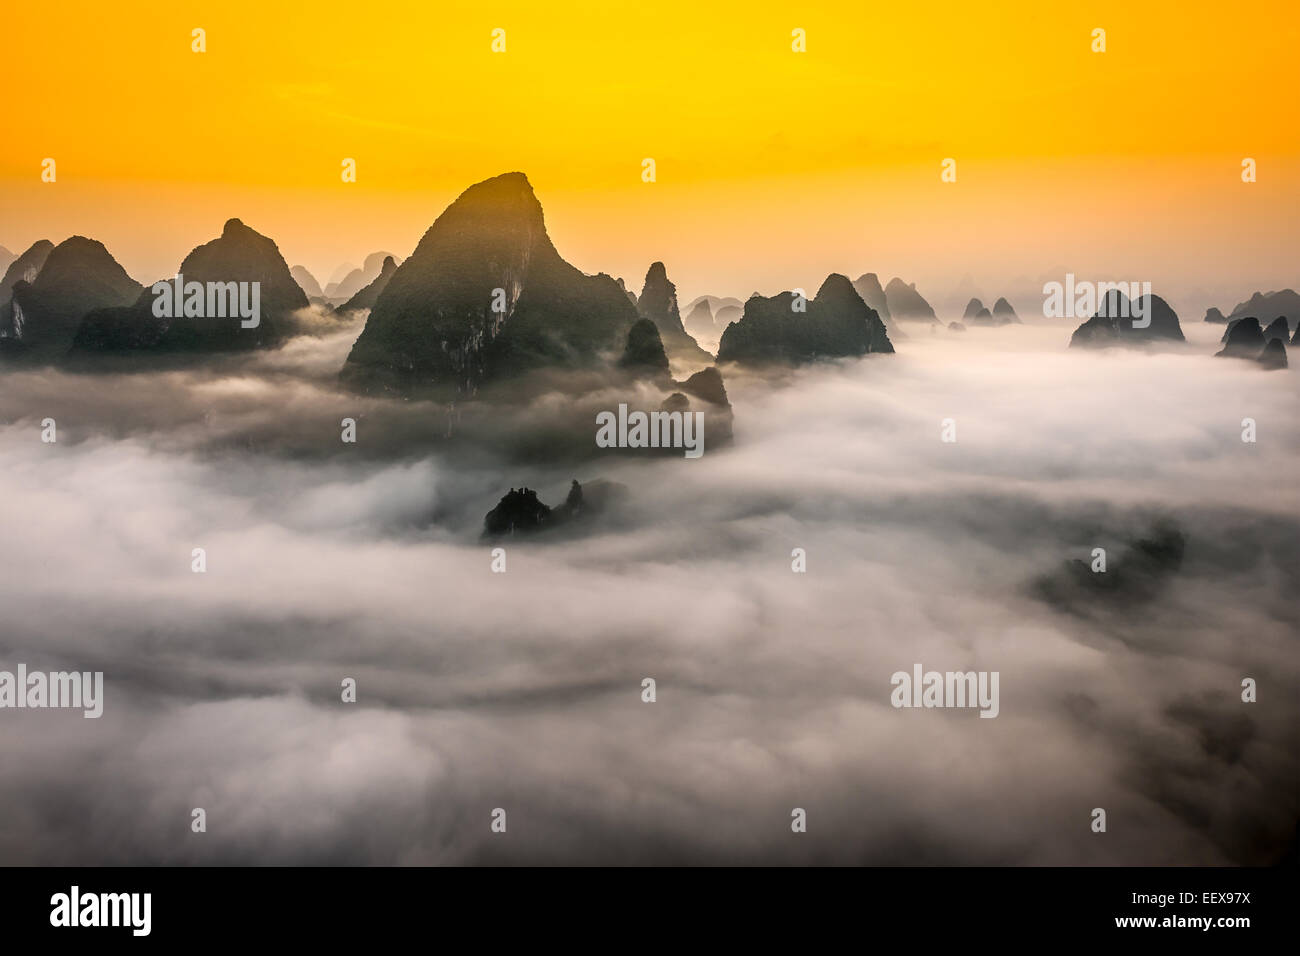 Karst Mountains of Xingping, Guilin, China. Stock Photo